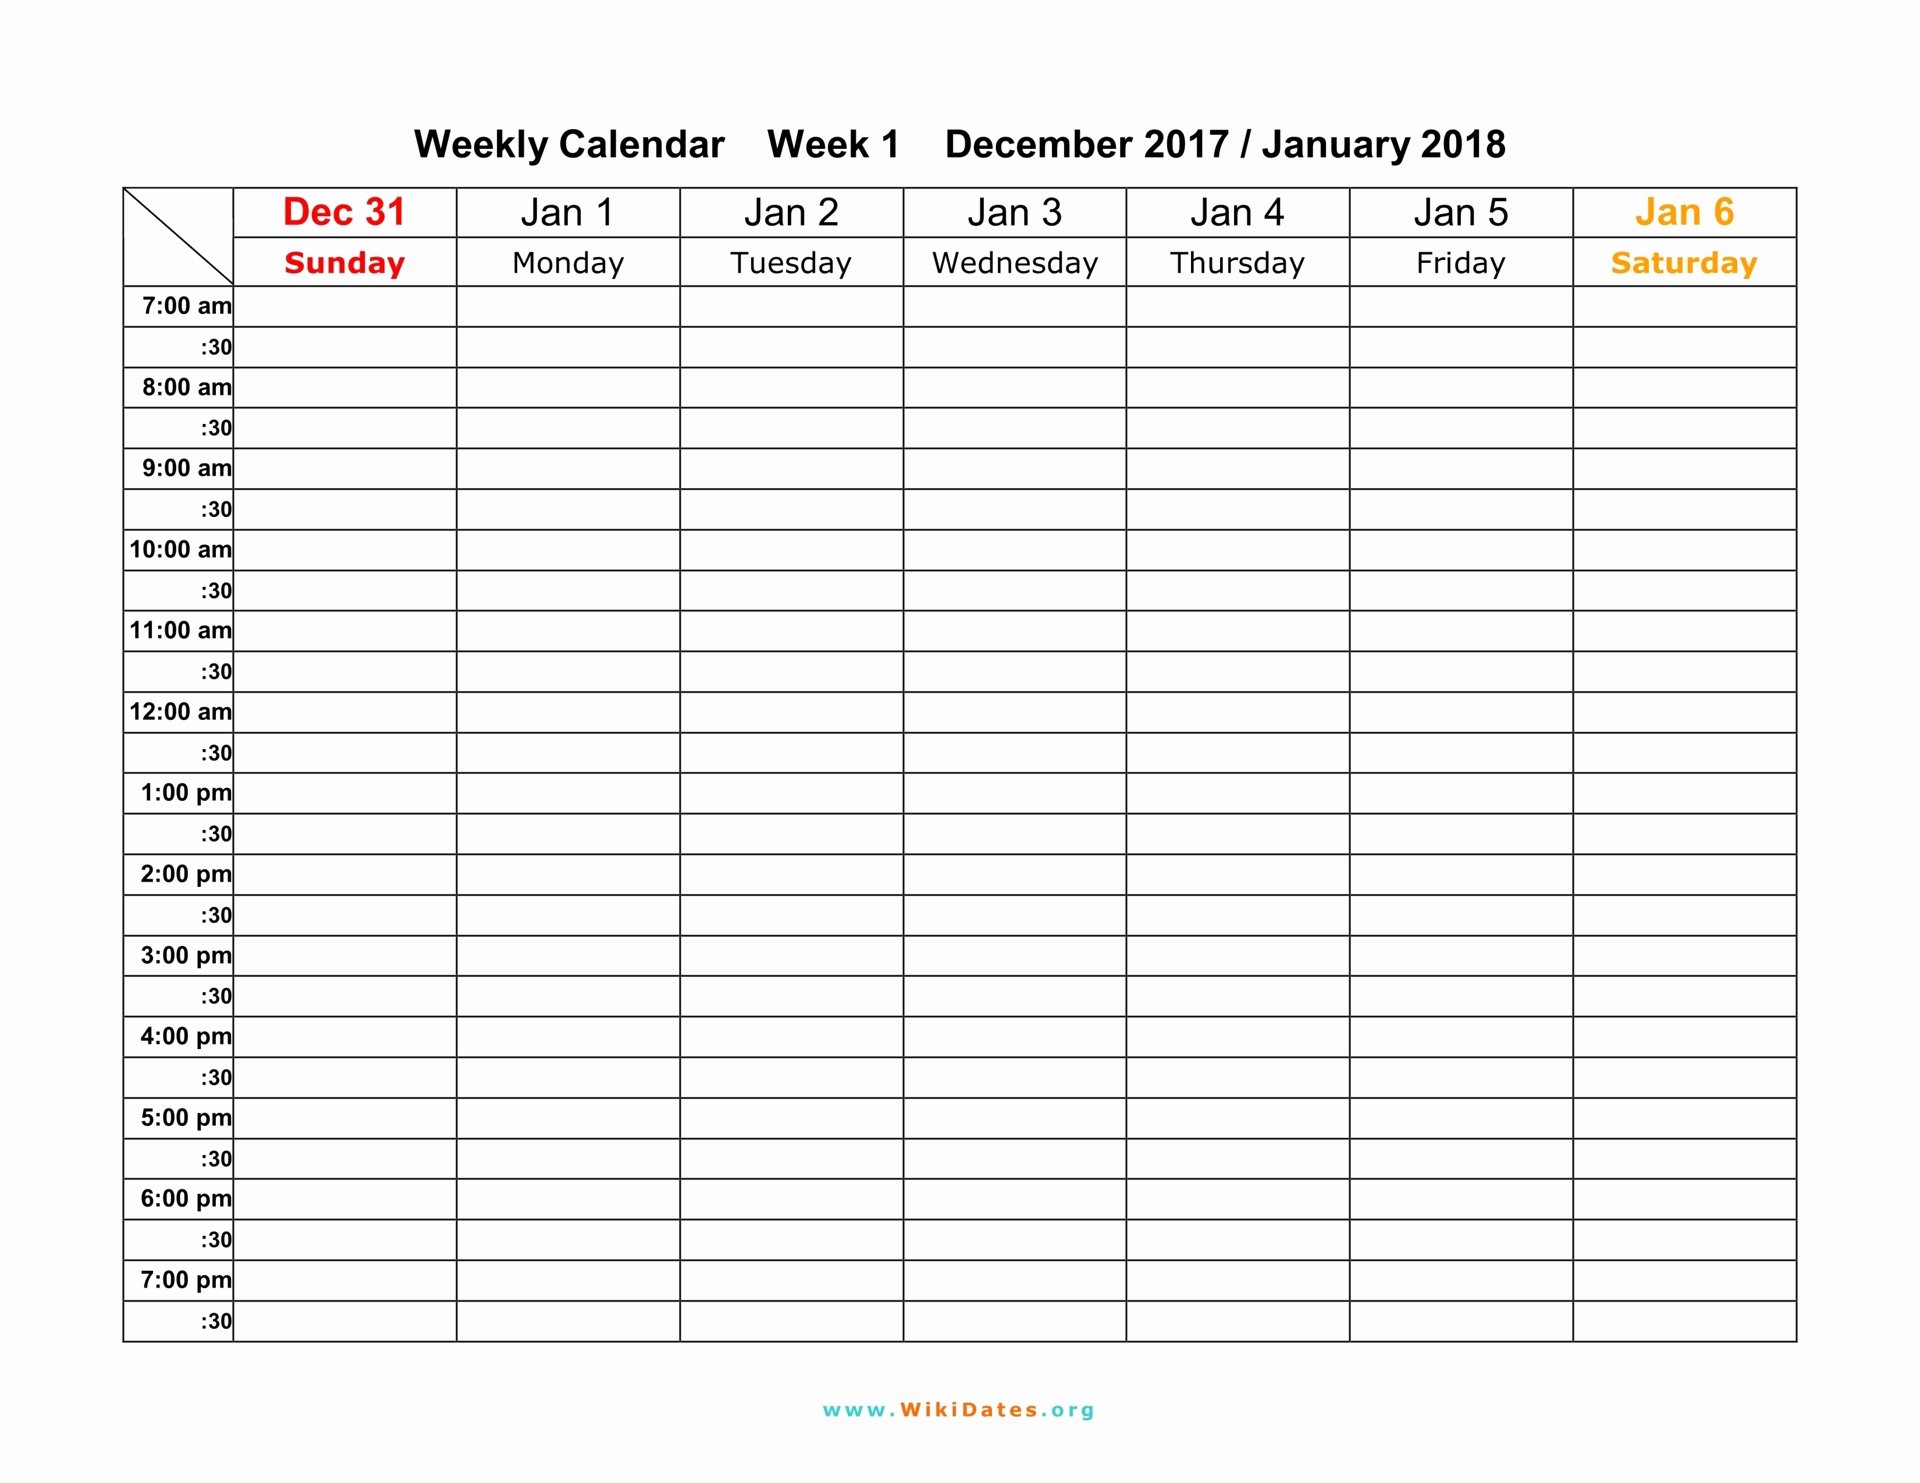 One Week Schedule Template New Weekly Calendar Download Weekly Calendar 2017 and 2018